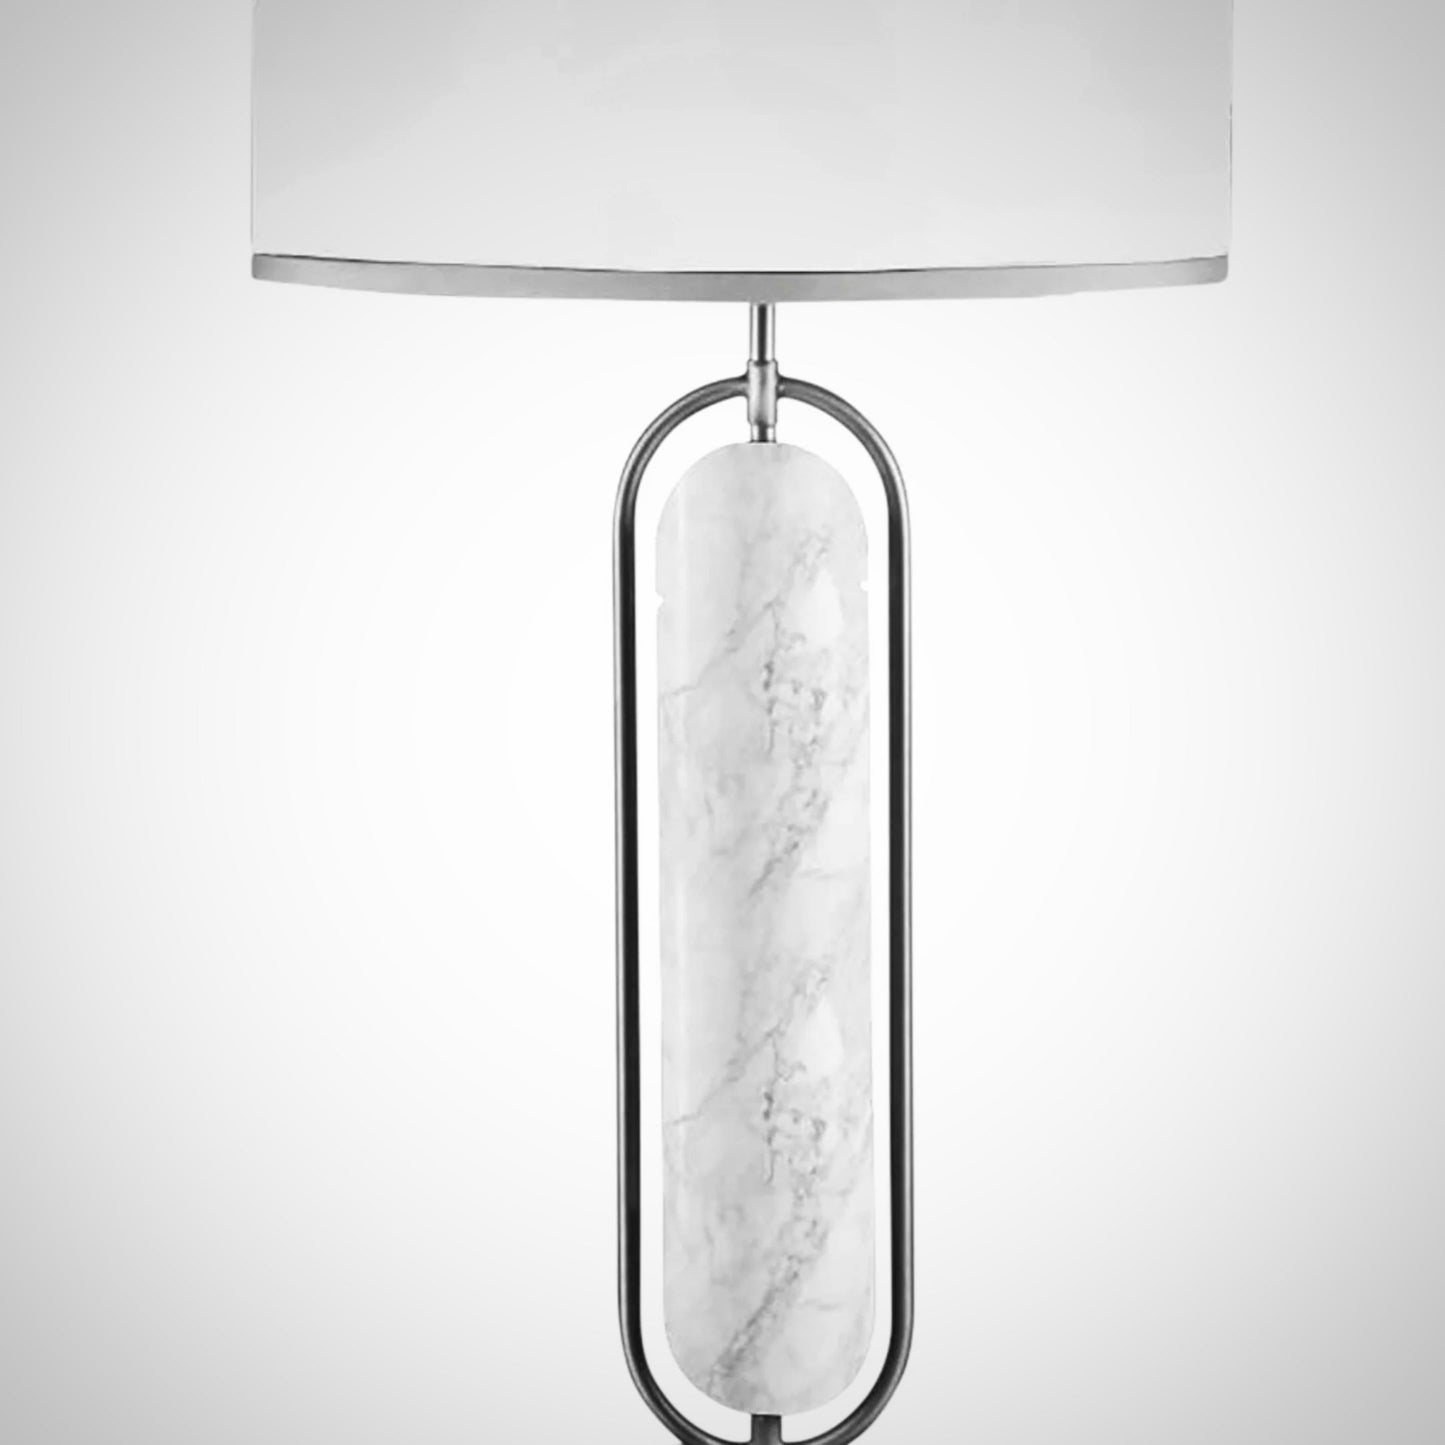 Seleny Lamp